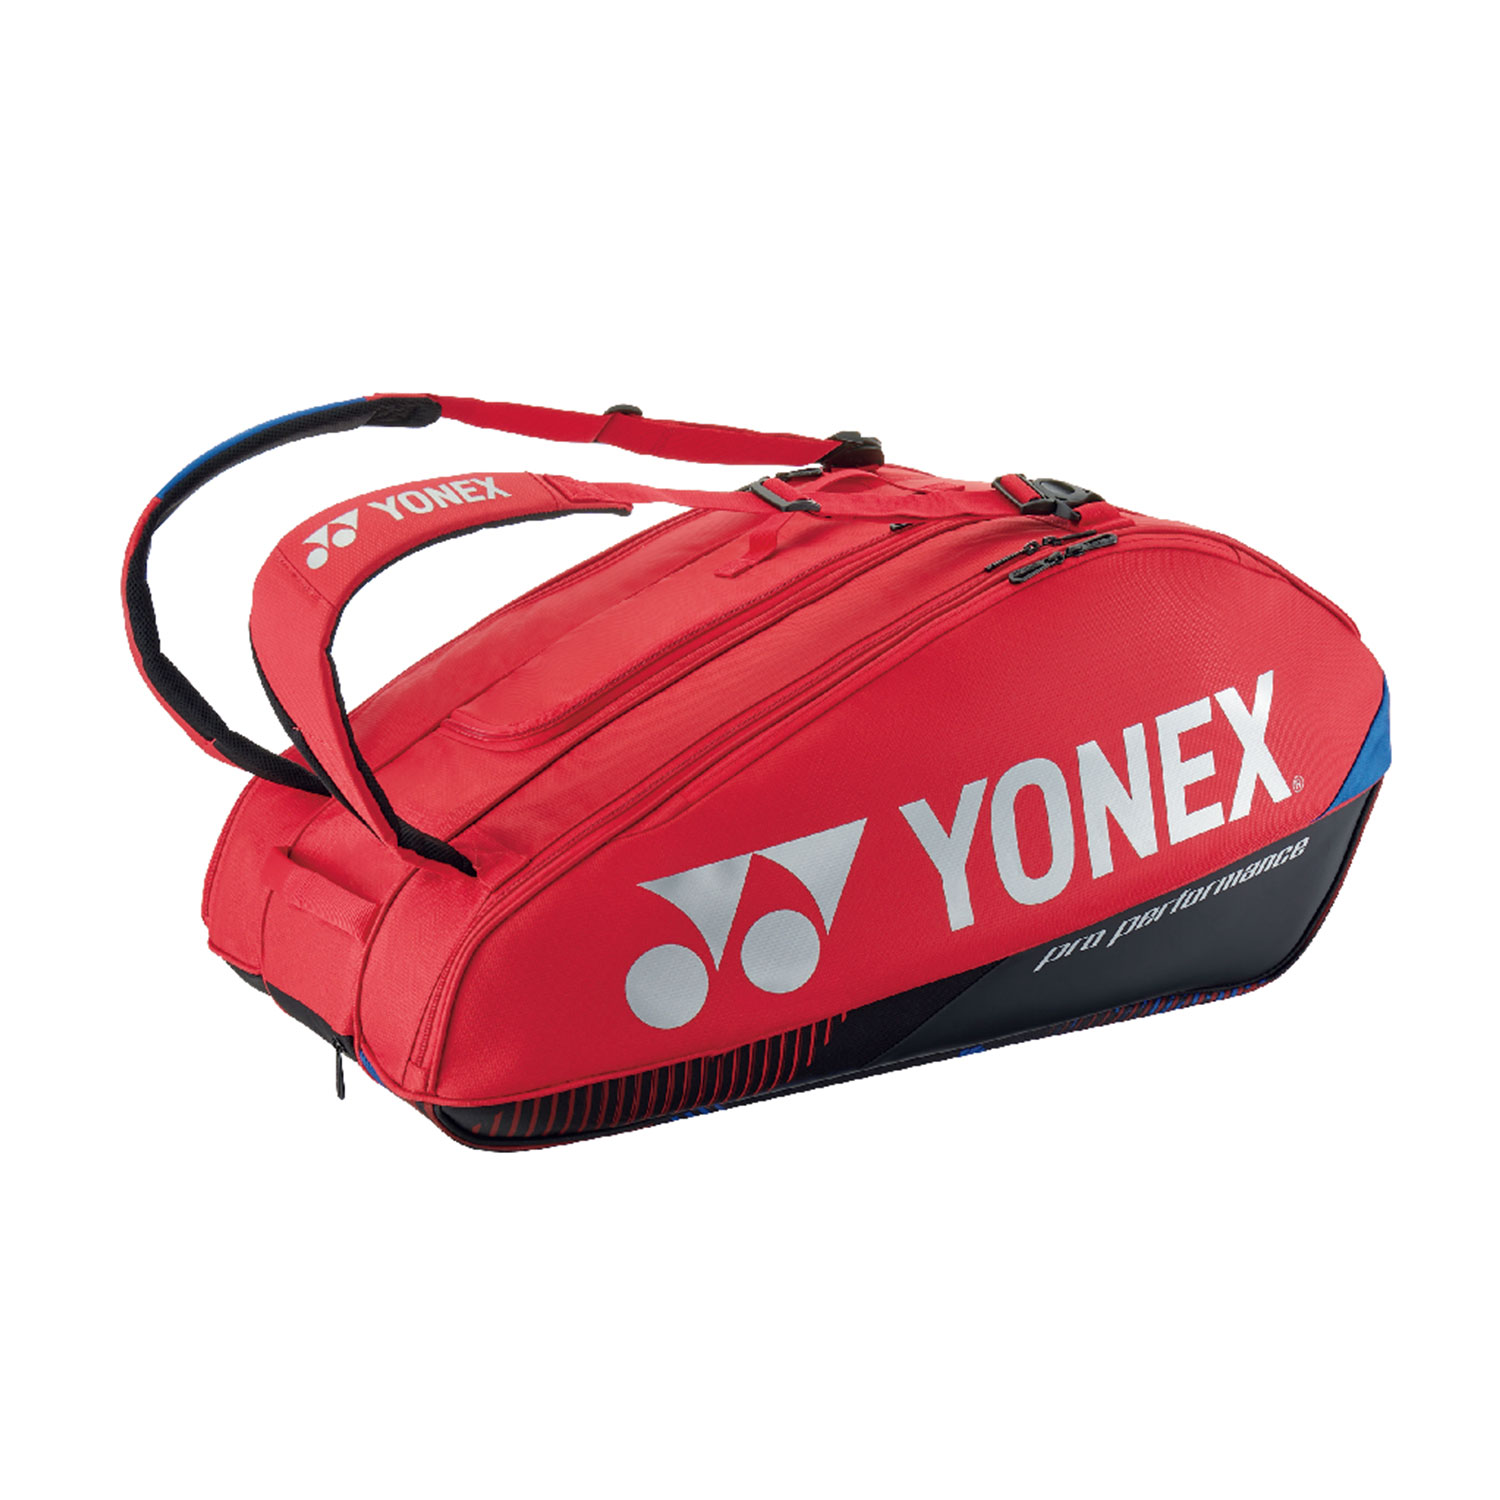 Yonex Bag Pro x 9 Bolsas - Scarlet